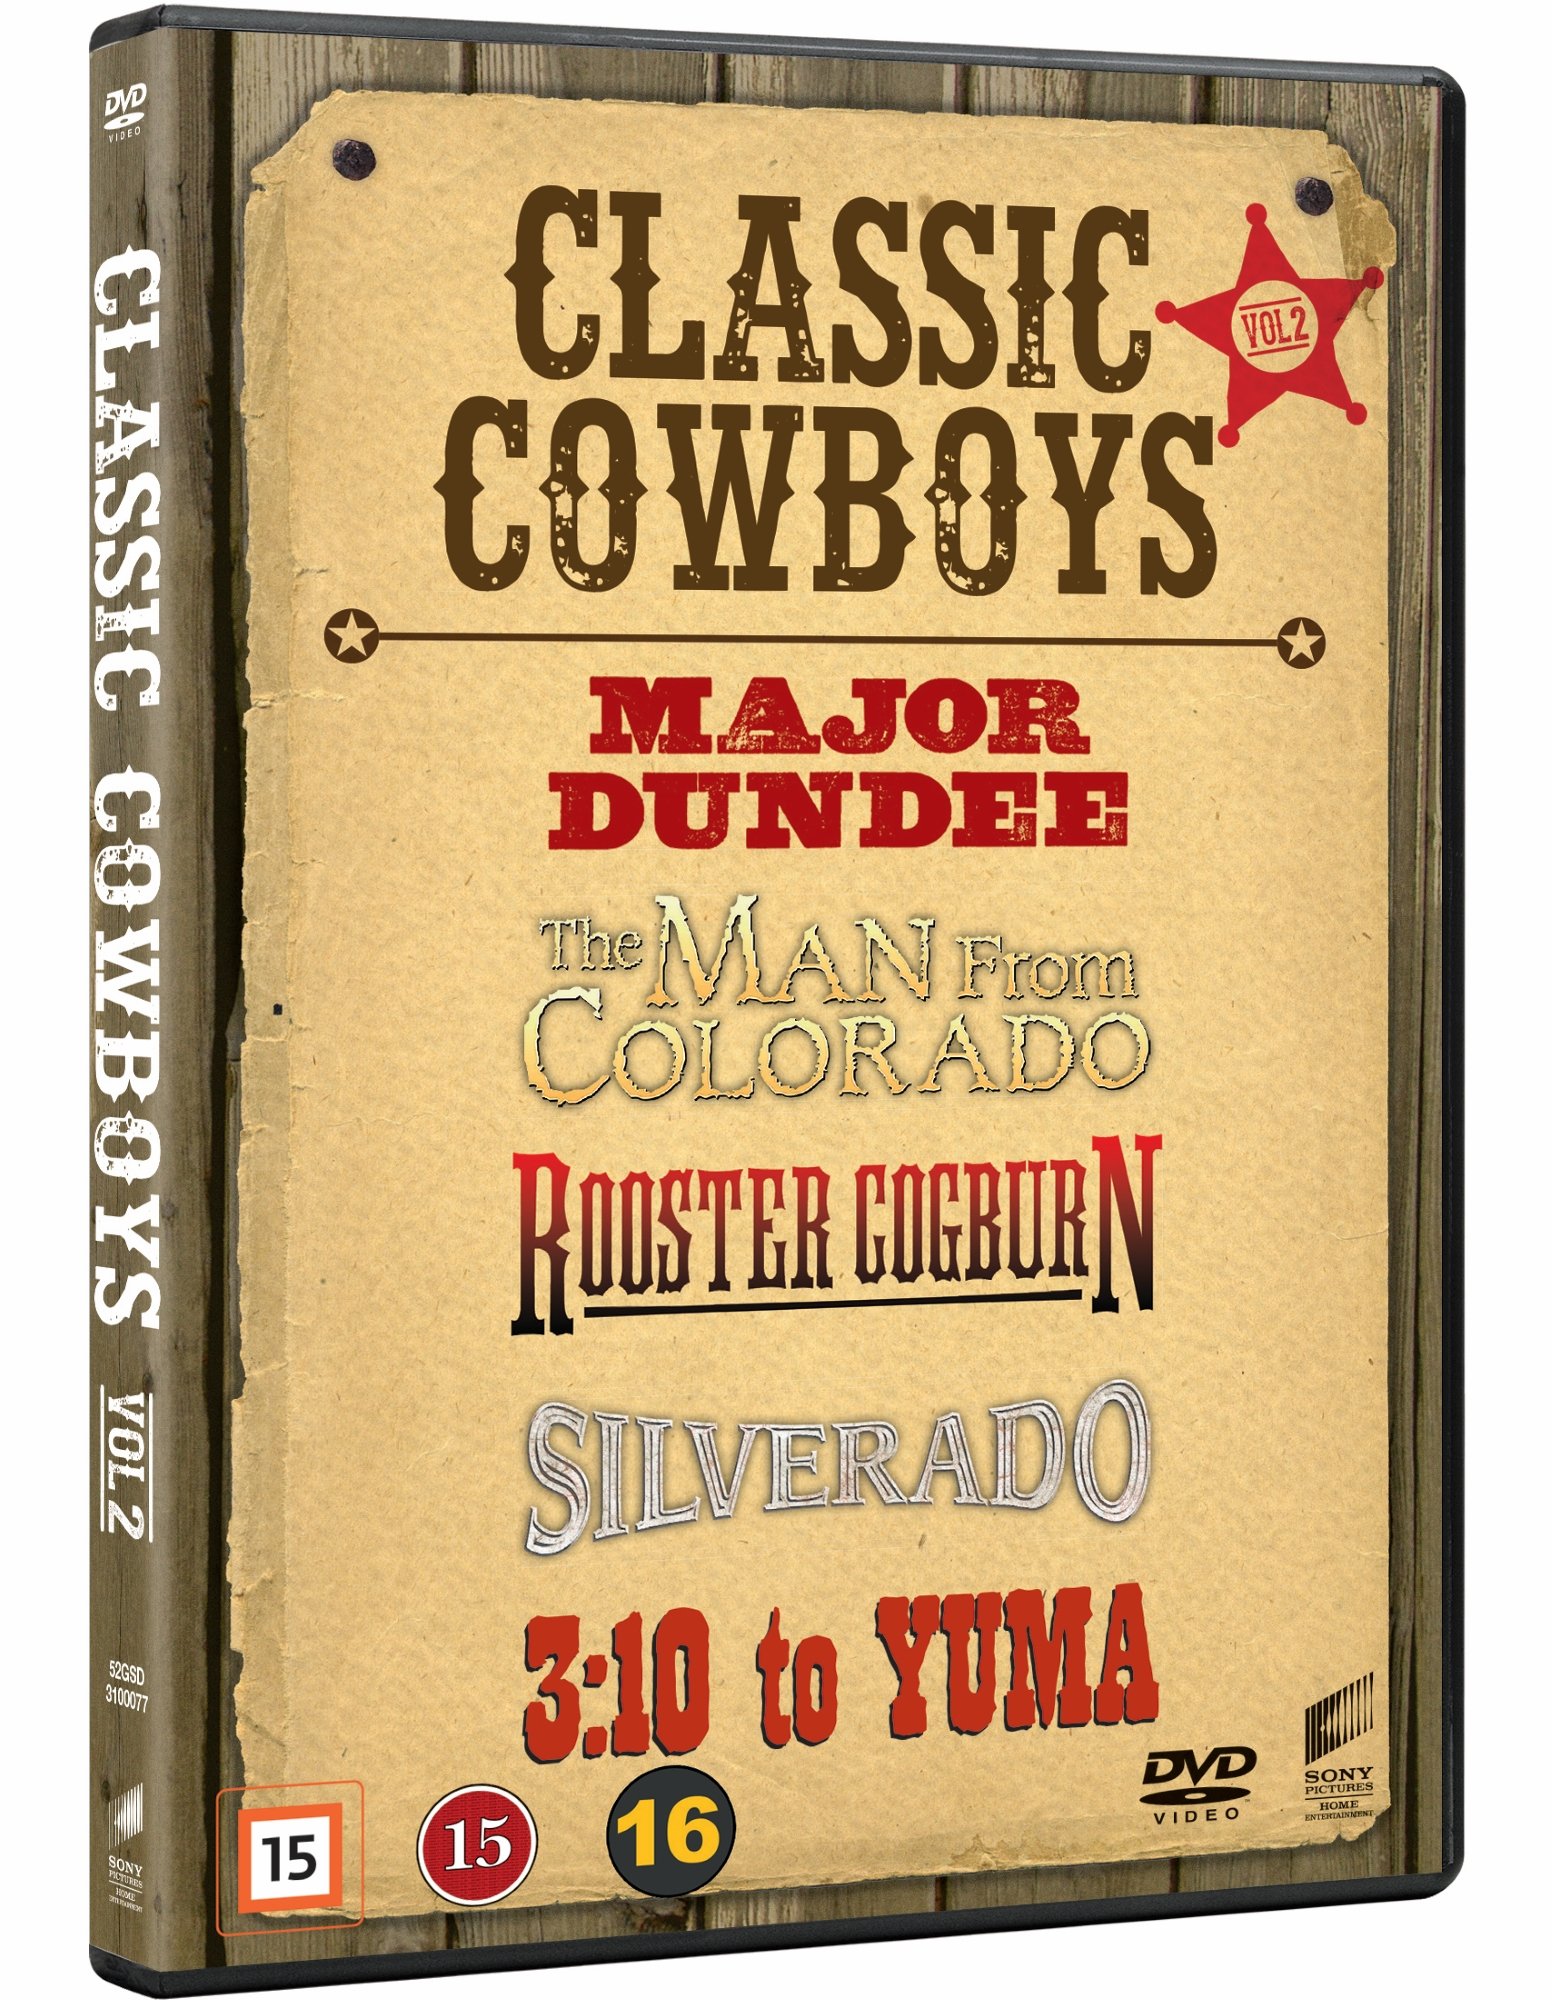 Buy Classic Cowboys Box Vol. 2 - DVD